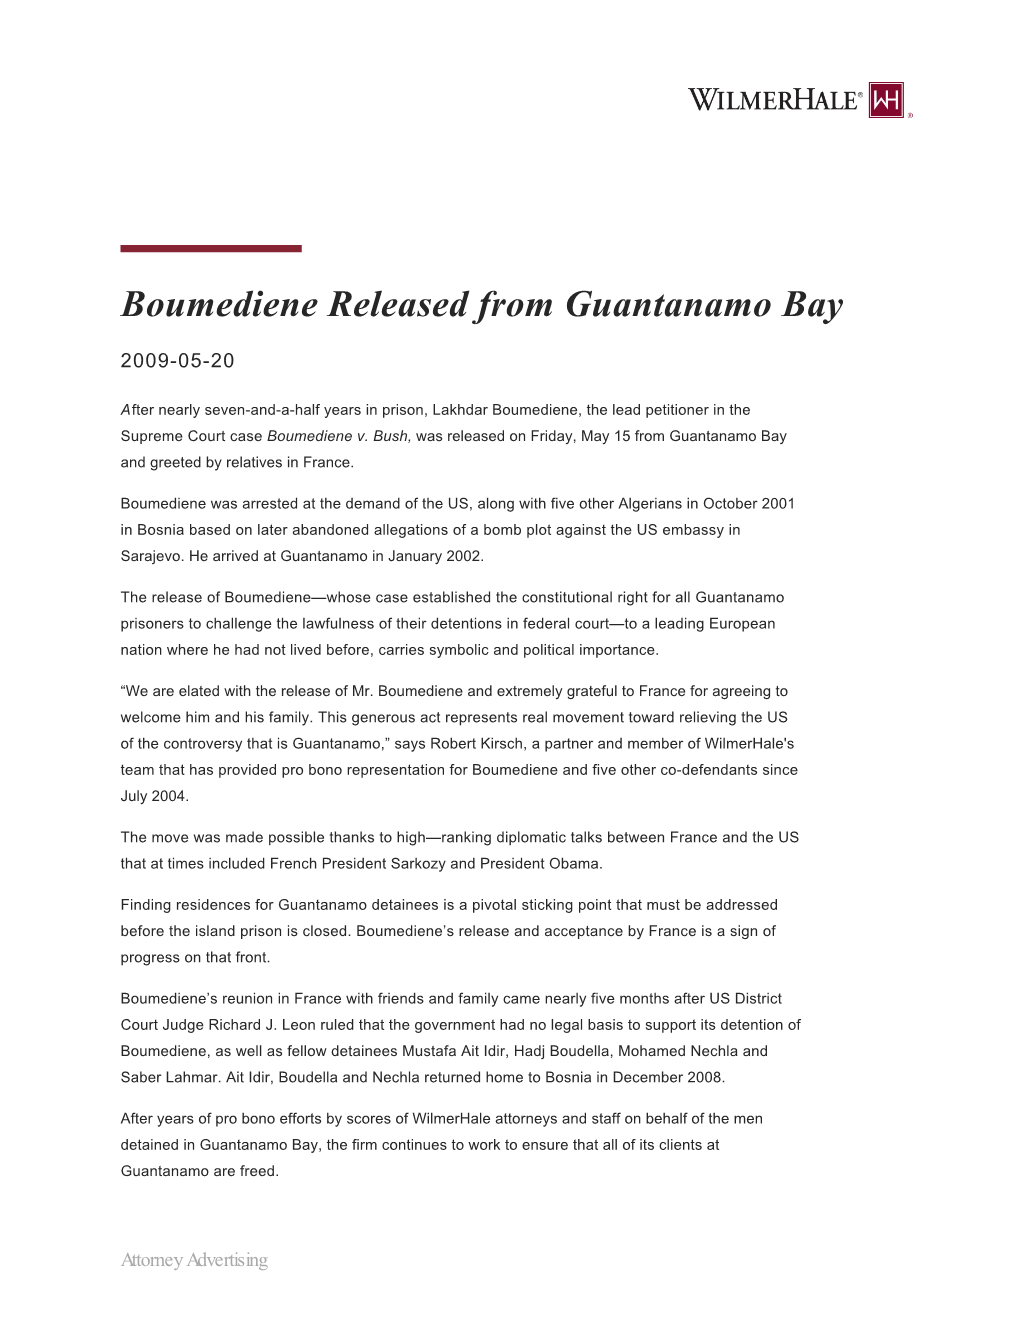 Boumediene Released from Guantanamo Bay | Wilmerhale